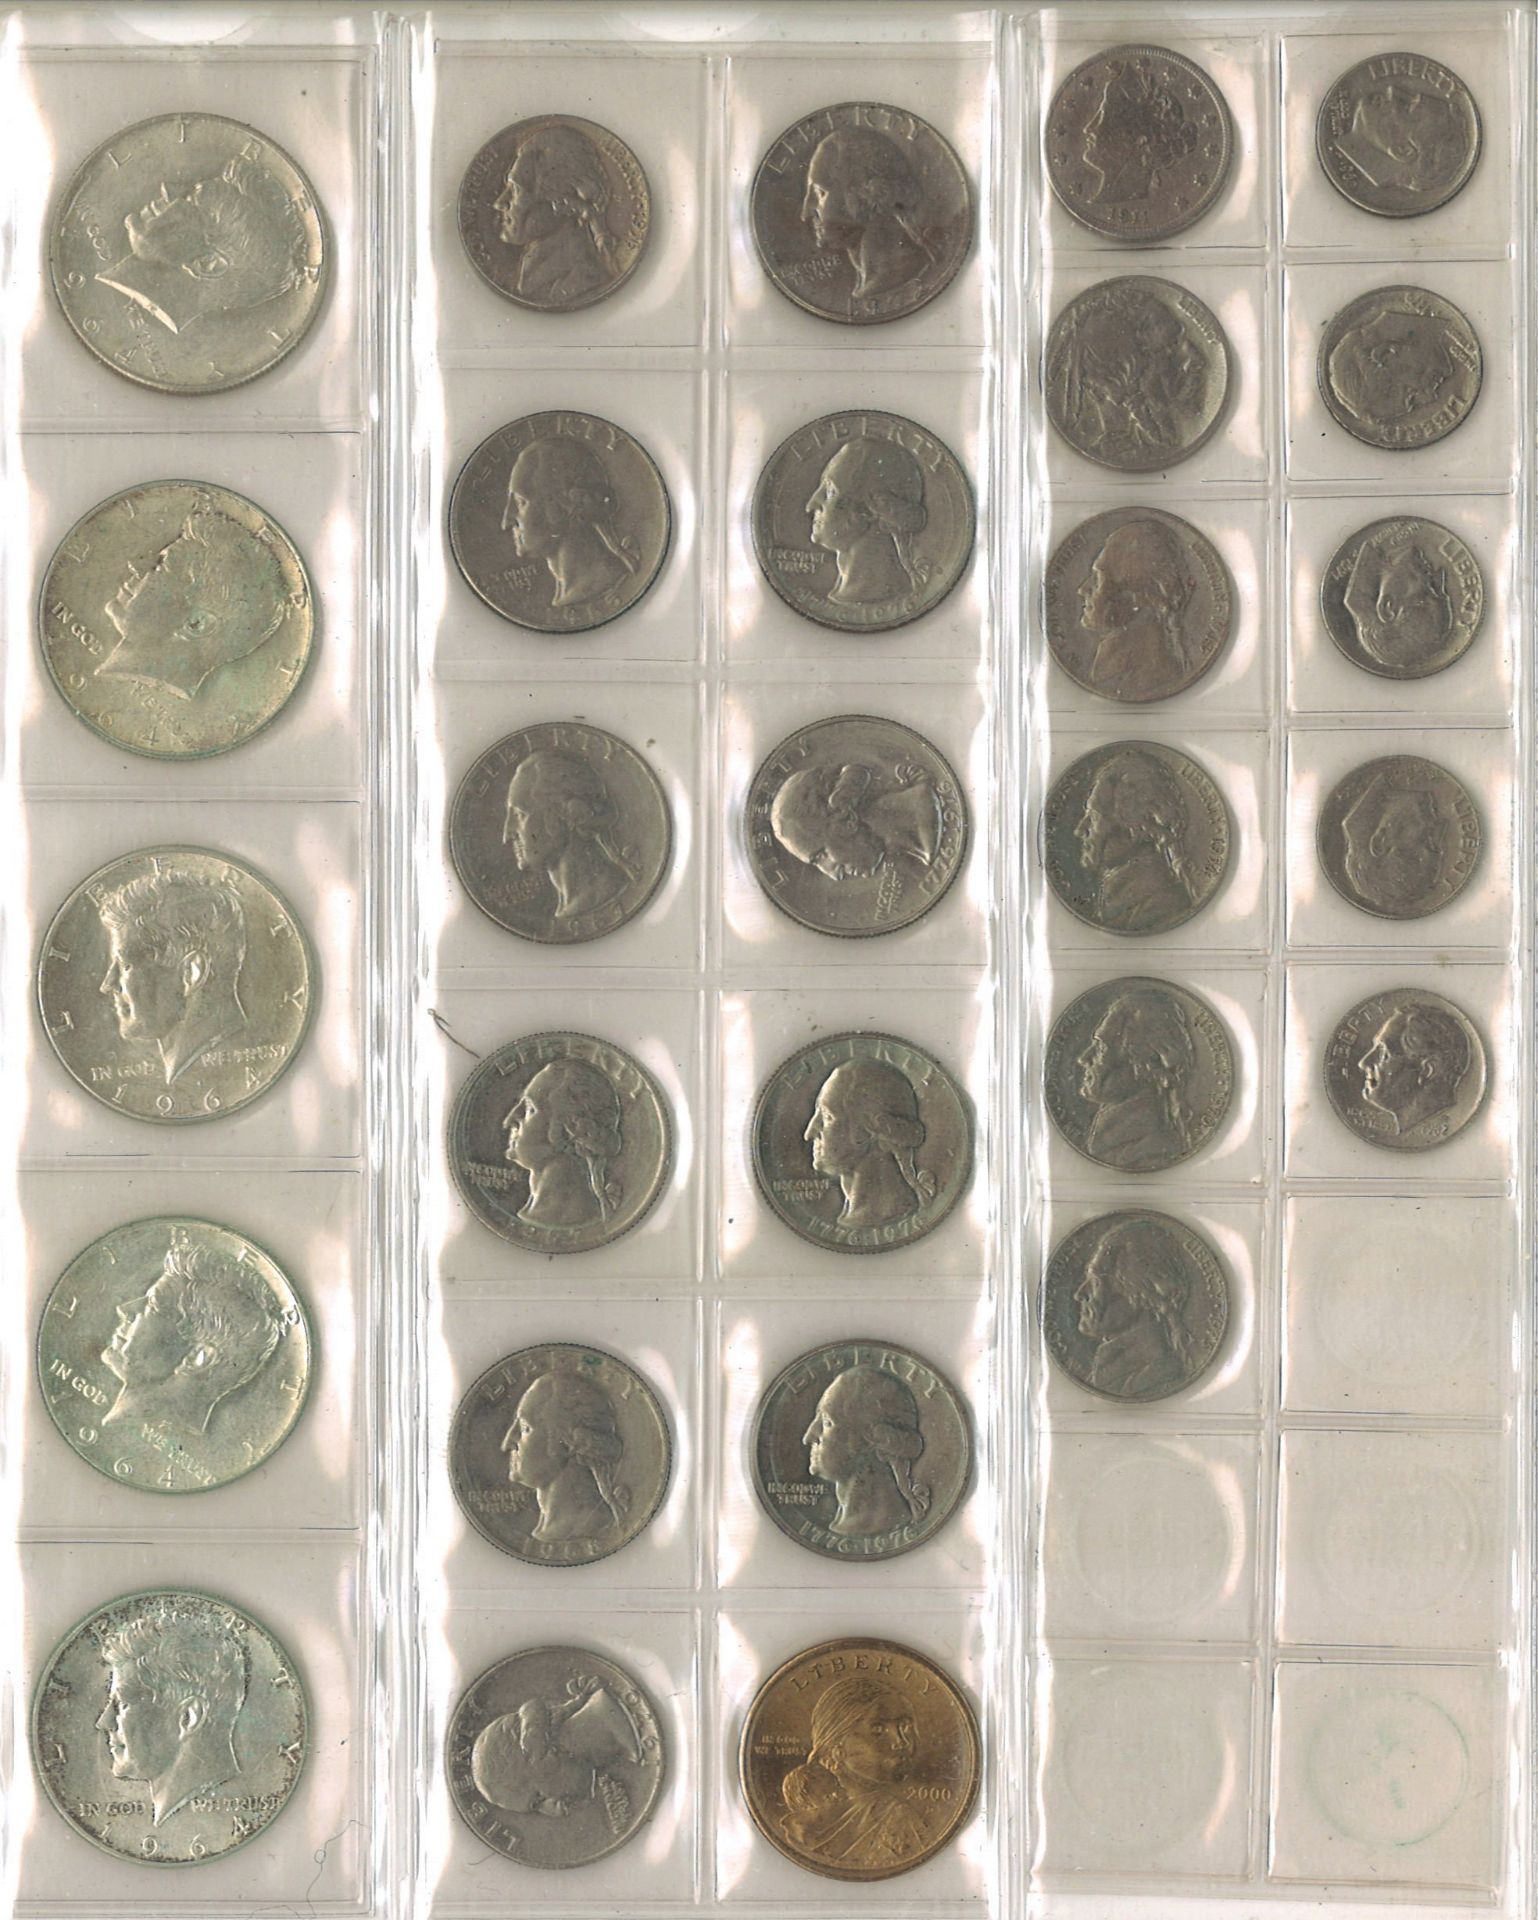 Münzalbum gefüllt mit Münzen aus USA, Jugoslawien, Ungarn, etc. dabei alleine 15 Half-Dollar